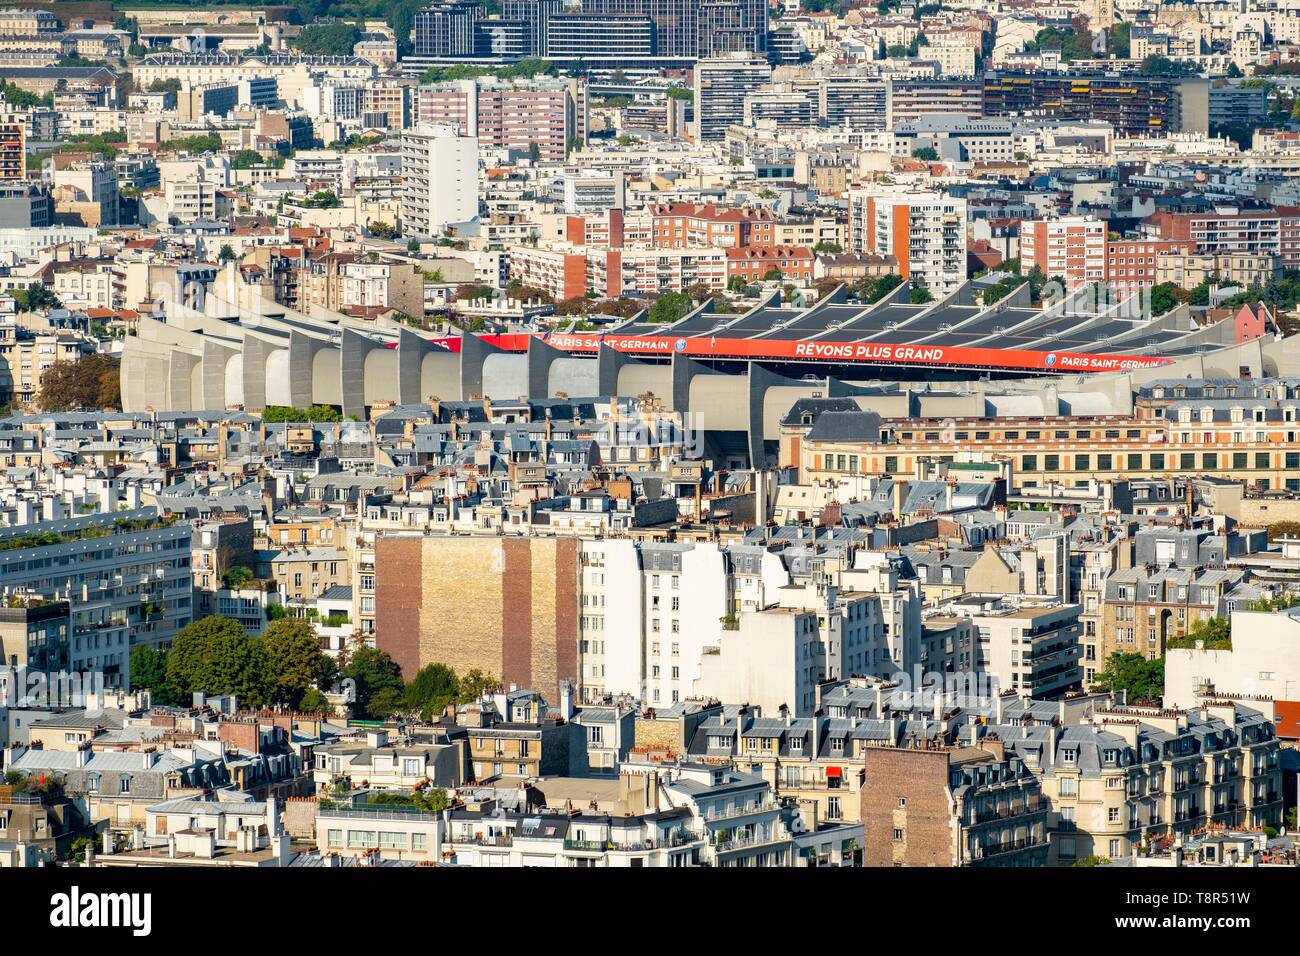 France, Paris, the Parc des Princes and the 16th arrondissement (aerial view) Stock Photo